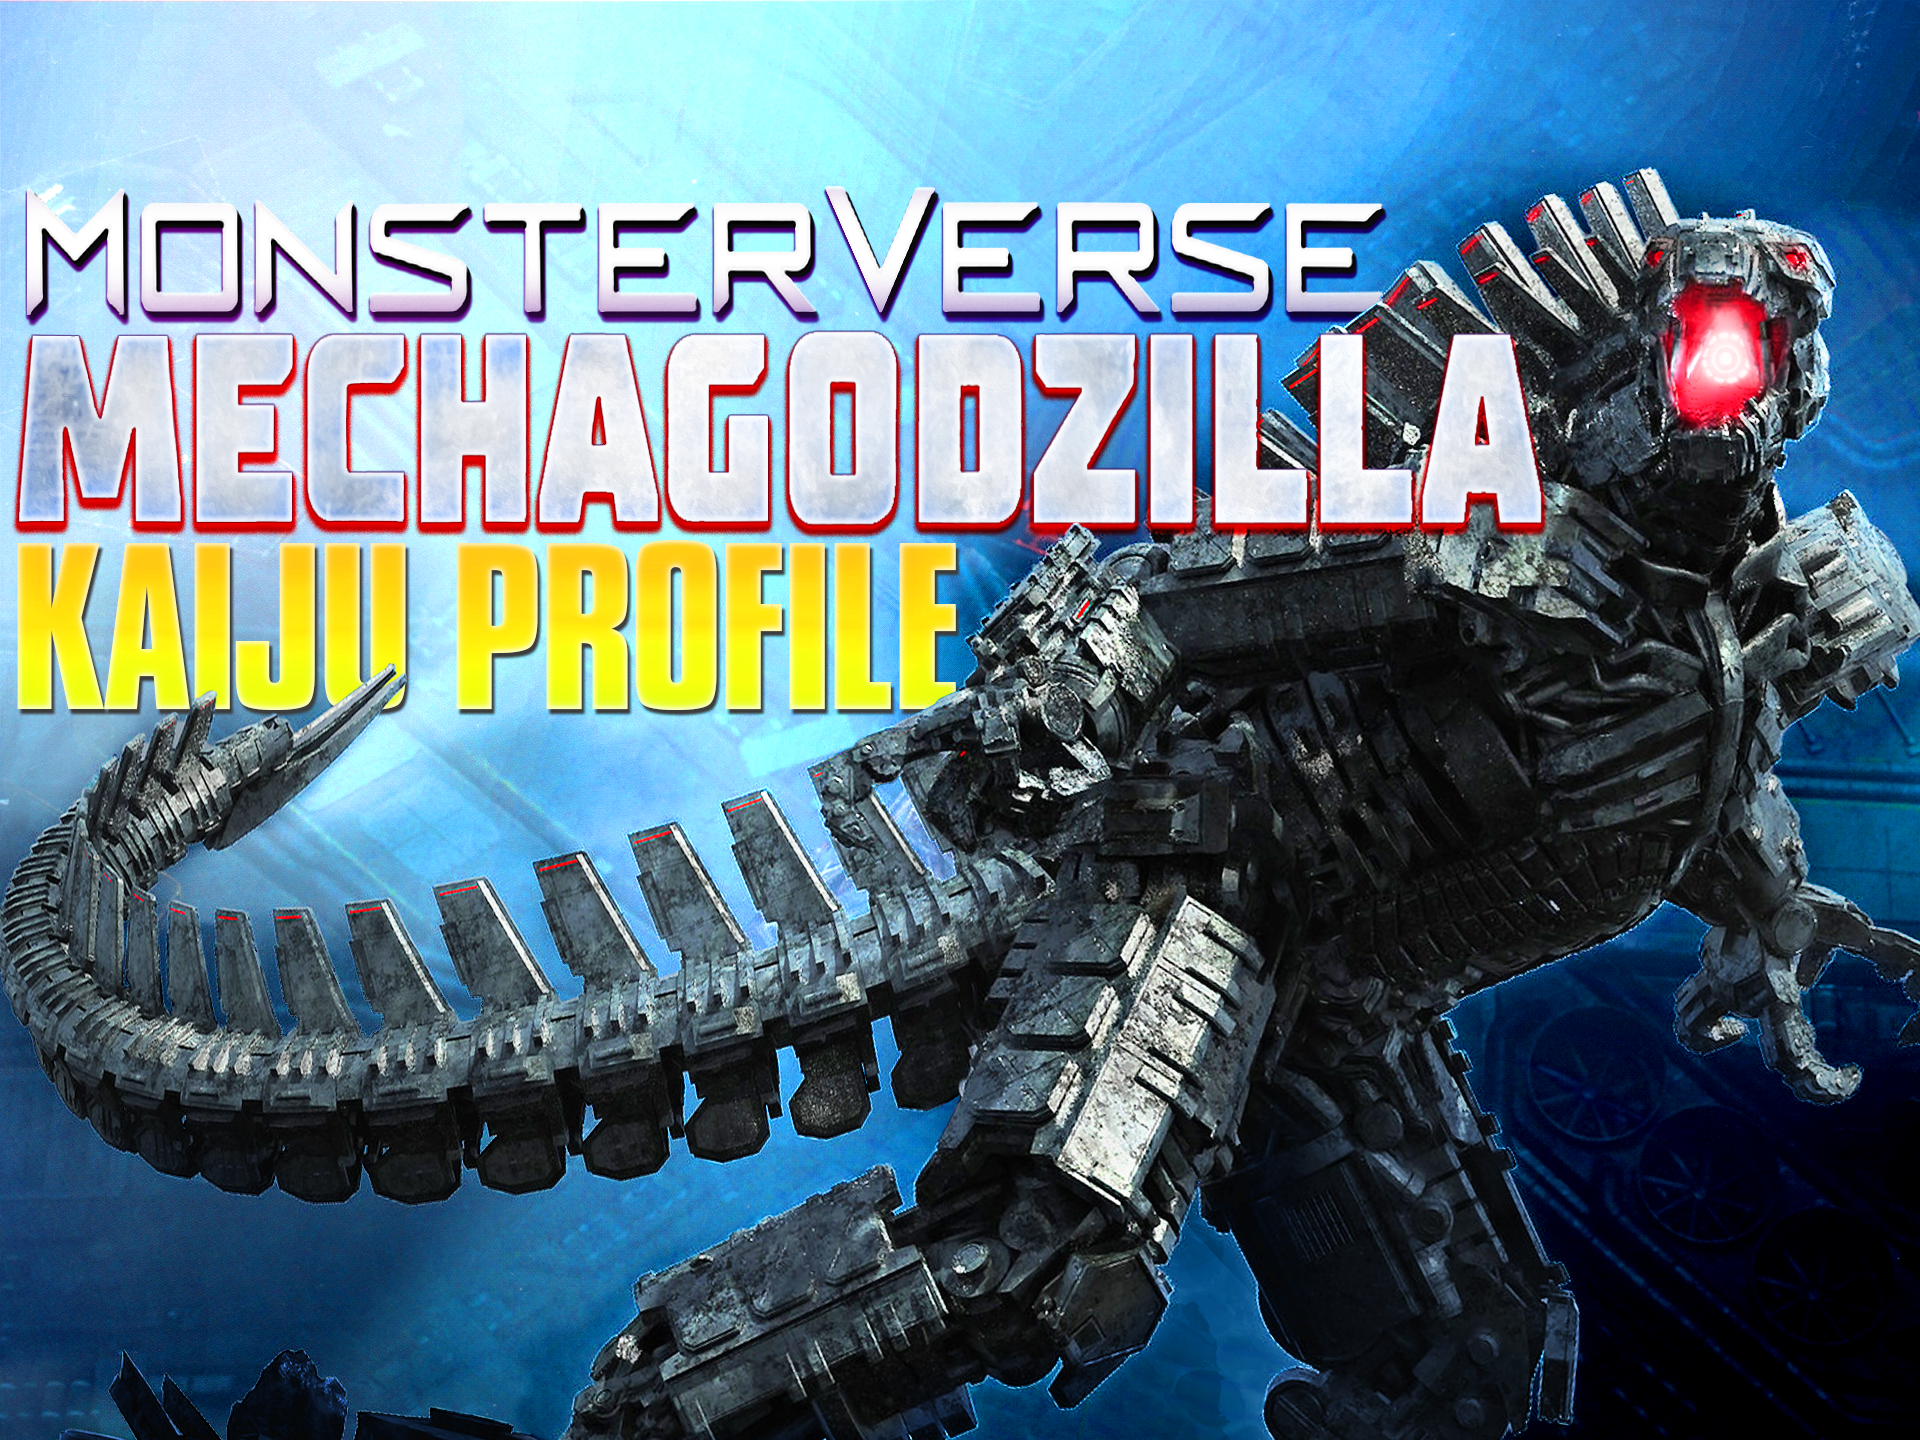 Anime Mechagodzilla | Godzilla | Know Your Meme